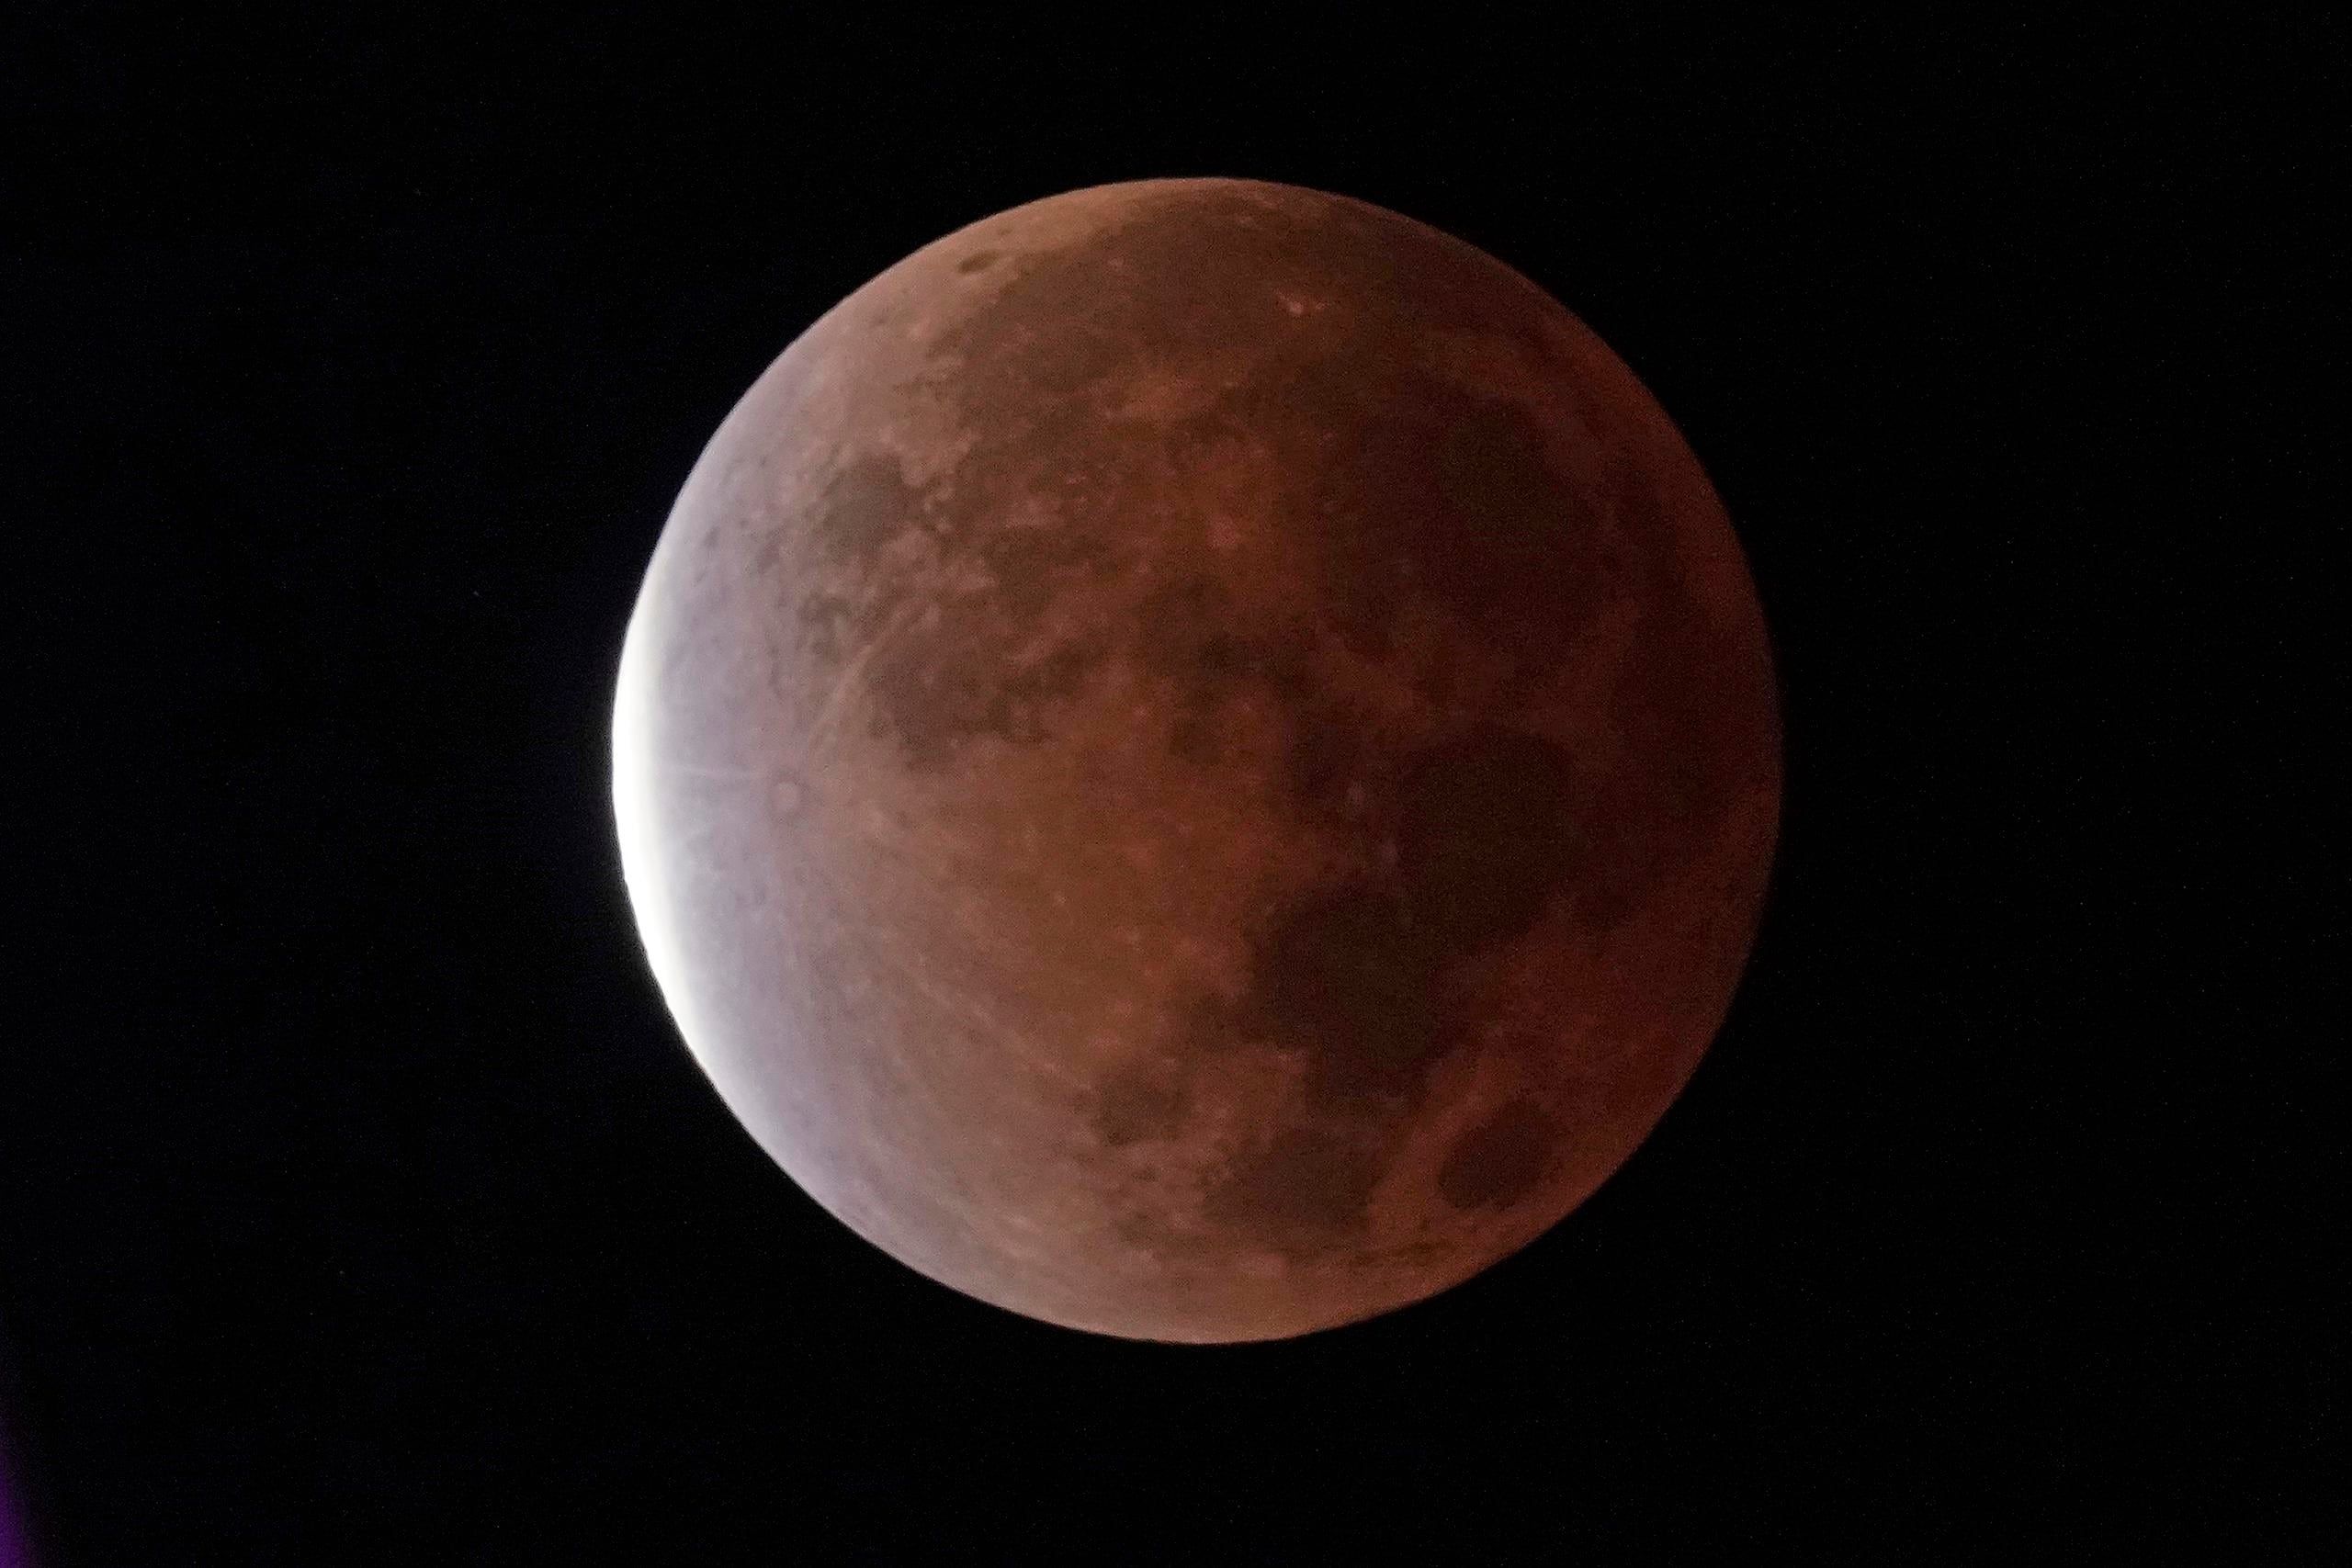 La entidad educativa indicó que la fase total del eclipse lunar tendrá una duración de 84 minutos, de modo que se trata de un eclipse extenso, lo cual permitirá apreciarlo aún si en algunos momentos se interponen las nubes.